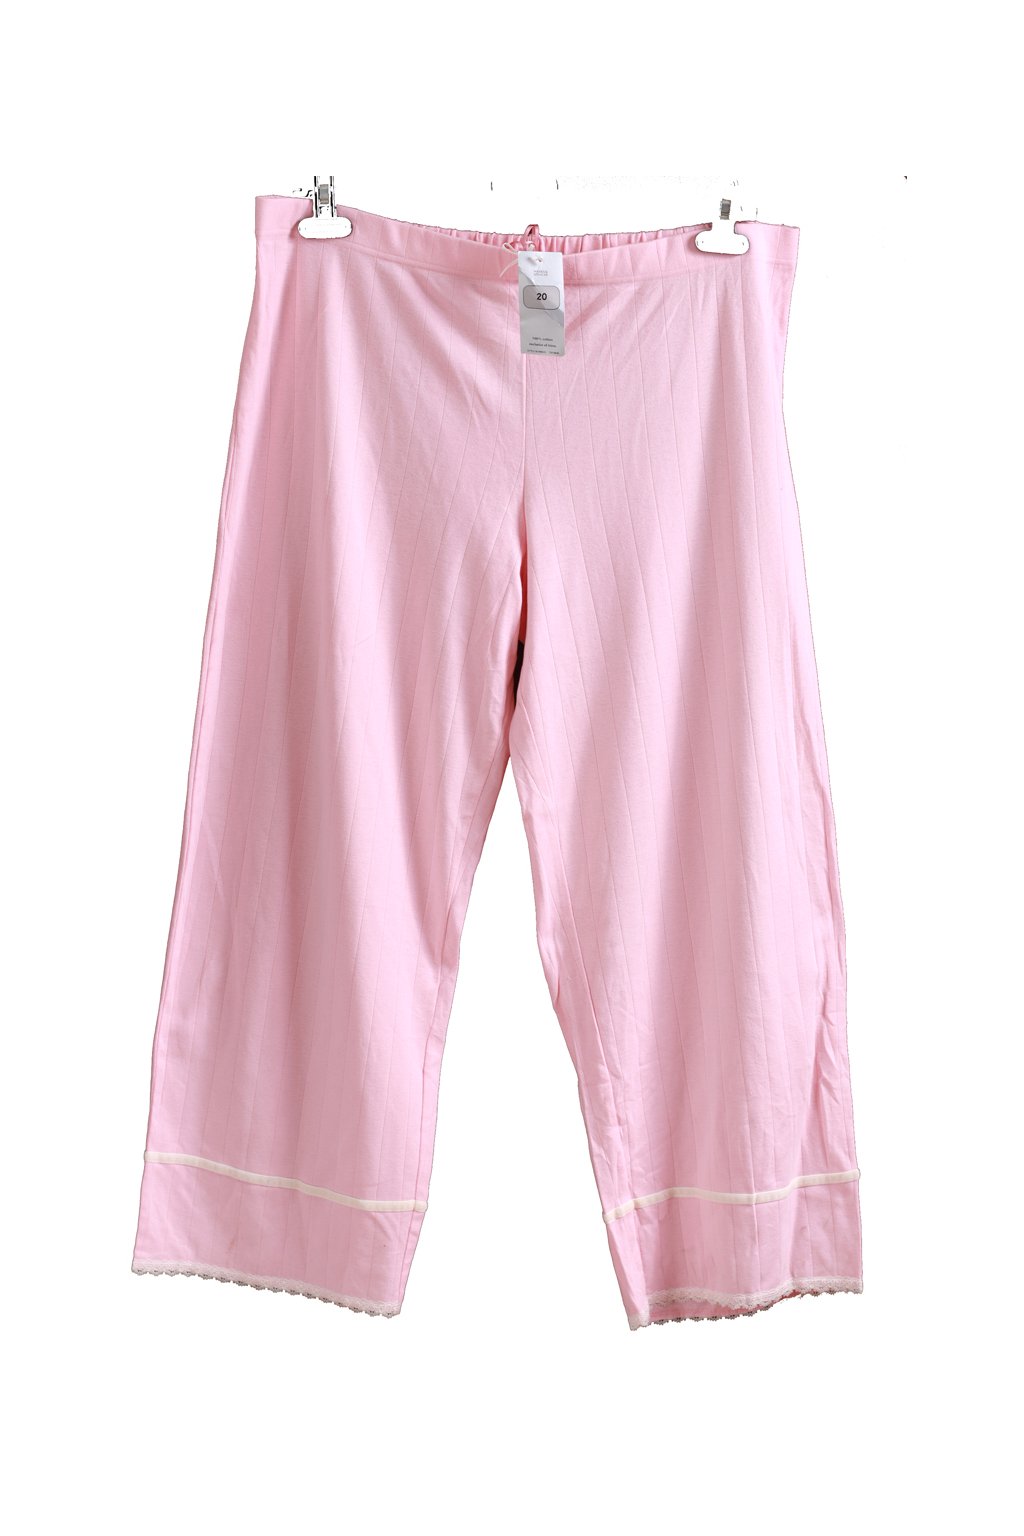 Dámské růžové kalhoty / na spaní / Marks&Spencer - XXXL (48) / ANGLIE